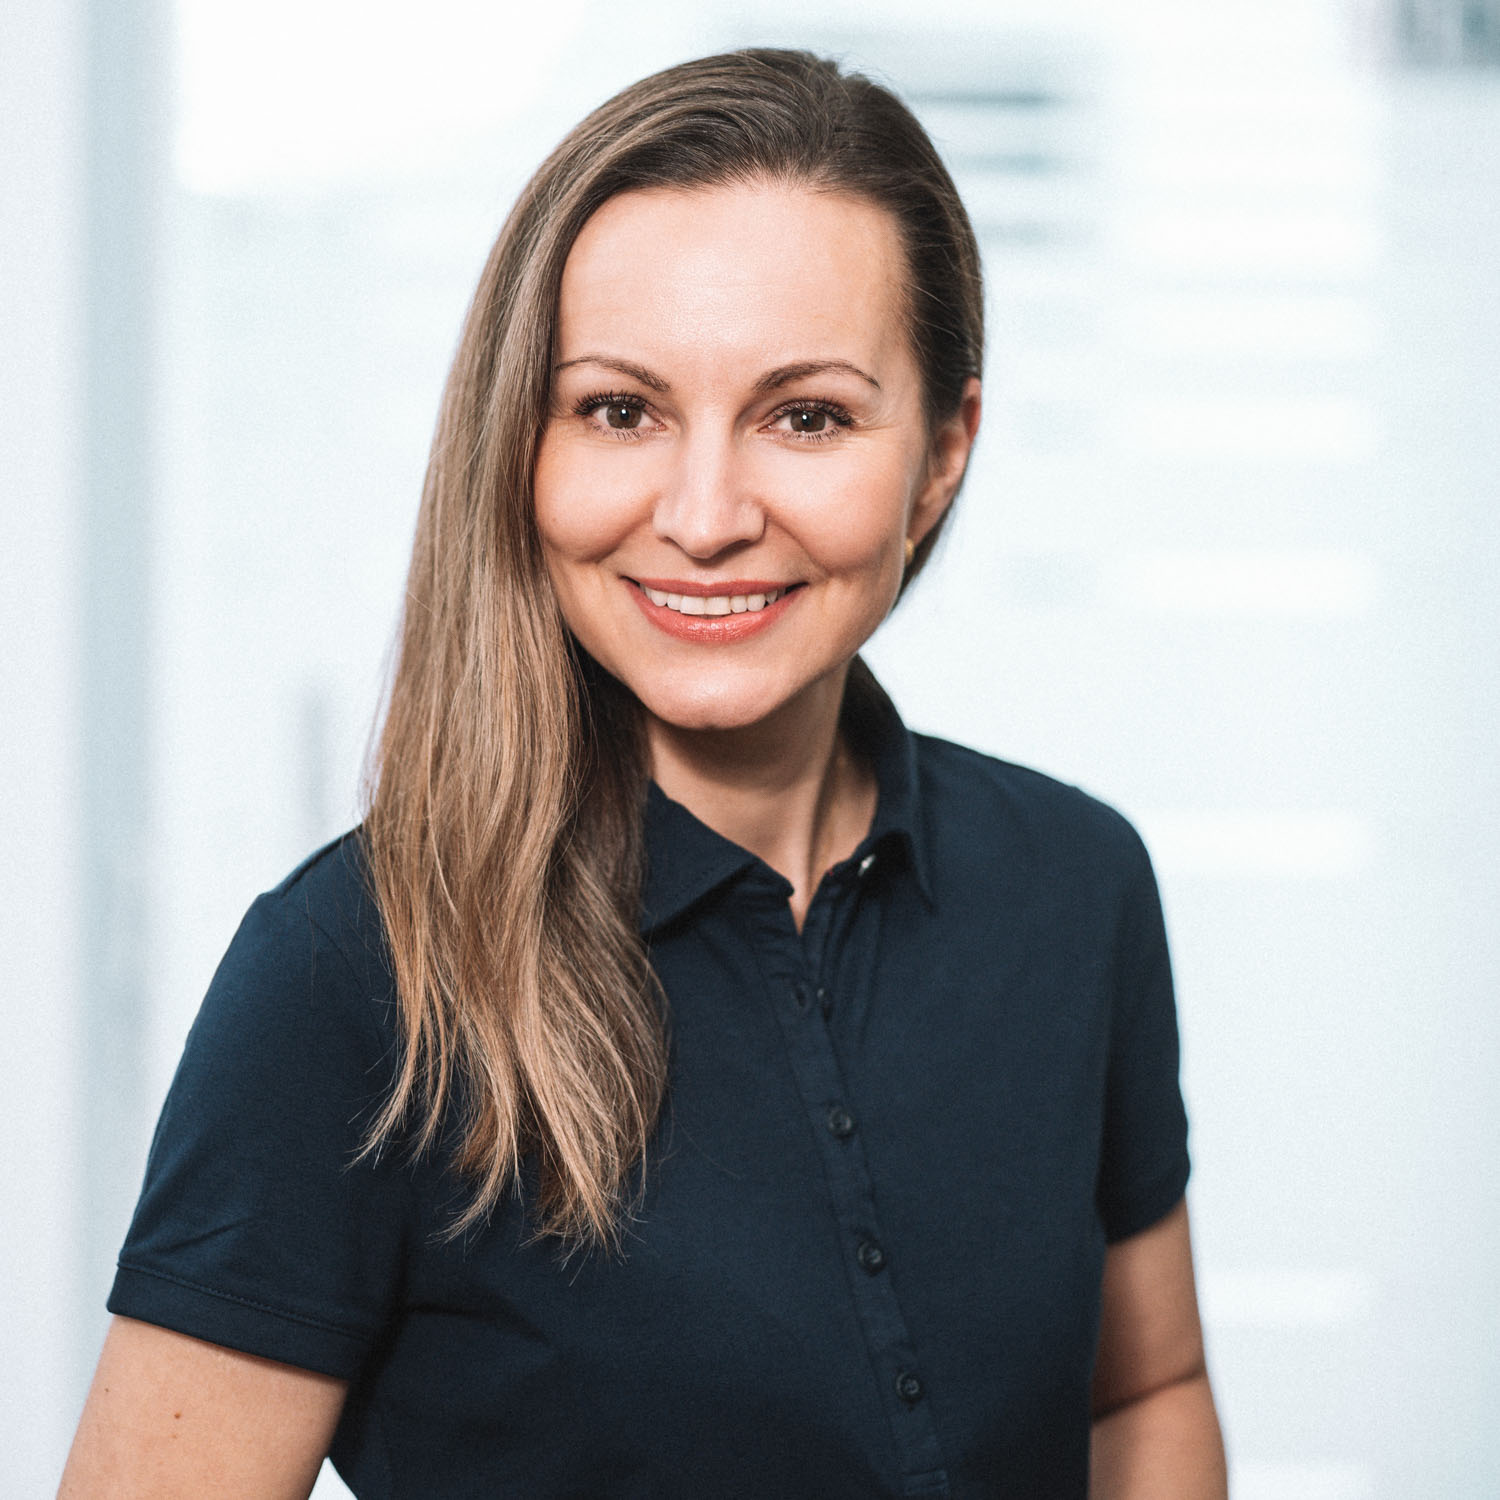 Jacqueline Rossade Breitzke als Prophylaxeassistenz in der Praxis für Zahngesundheit Teschner